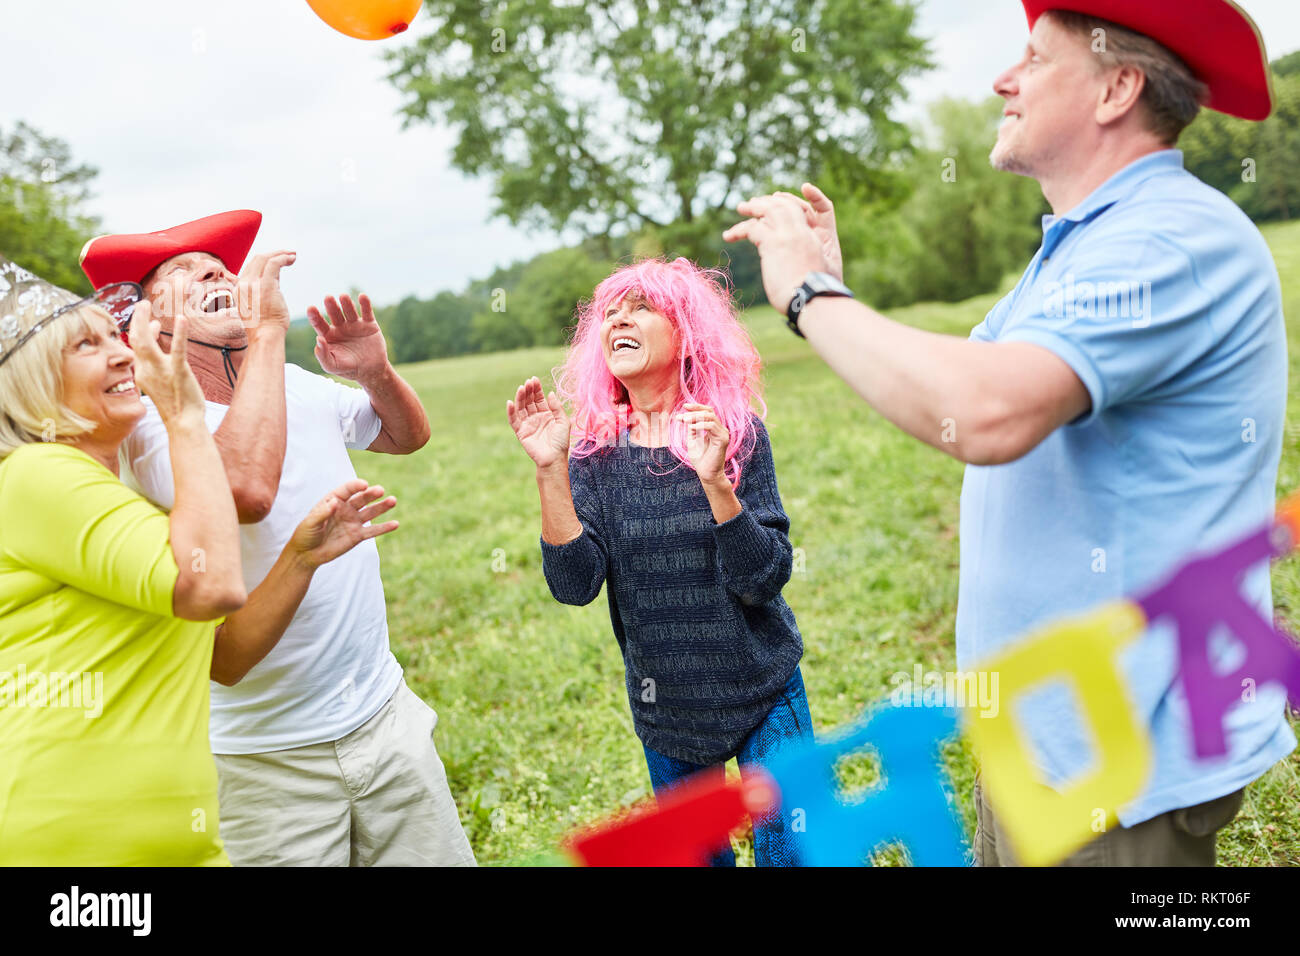 Groupe de personnes âgées Célébrer et jouer en costumes colorés lors d'une fête d'anniversaire Banque D'Images